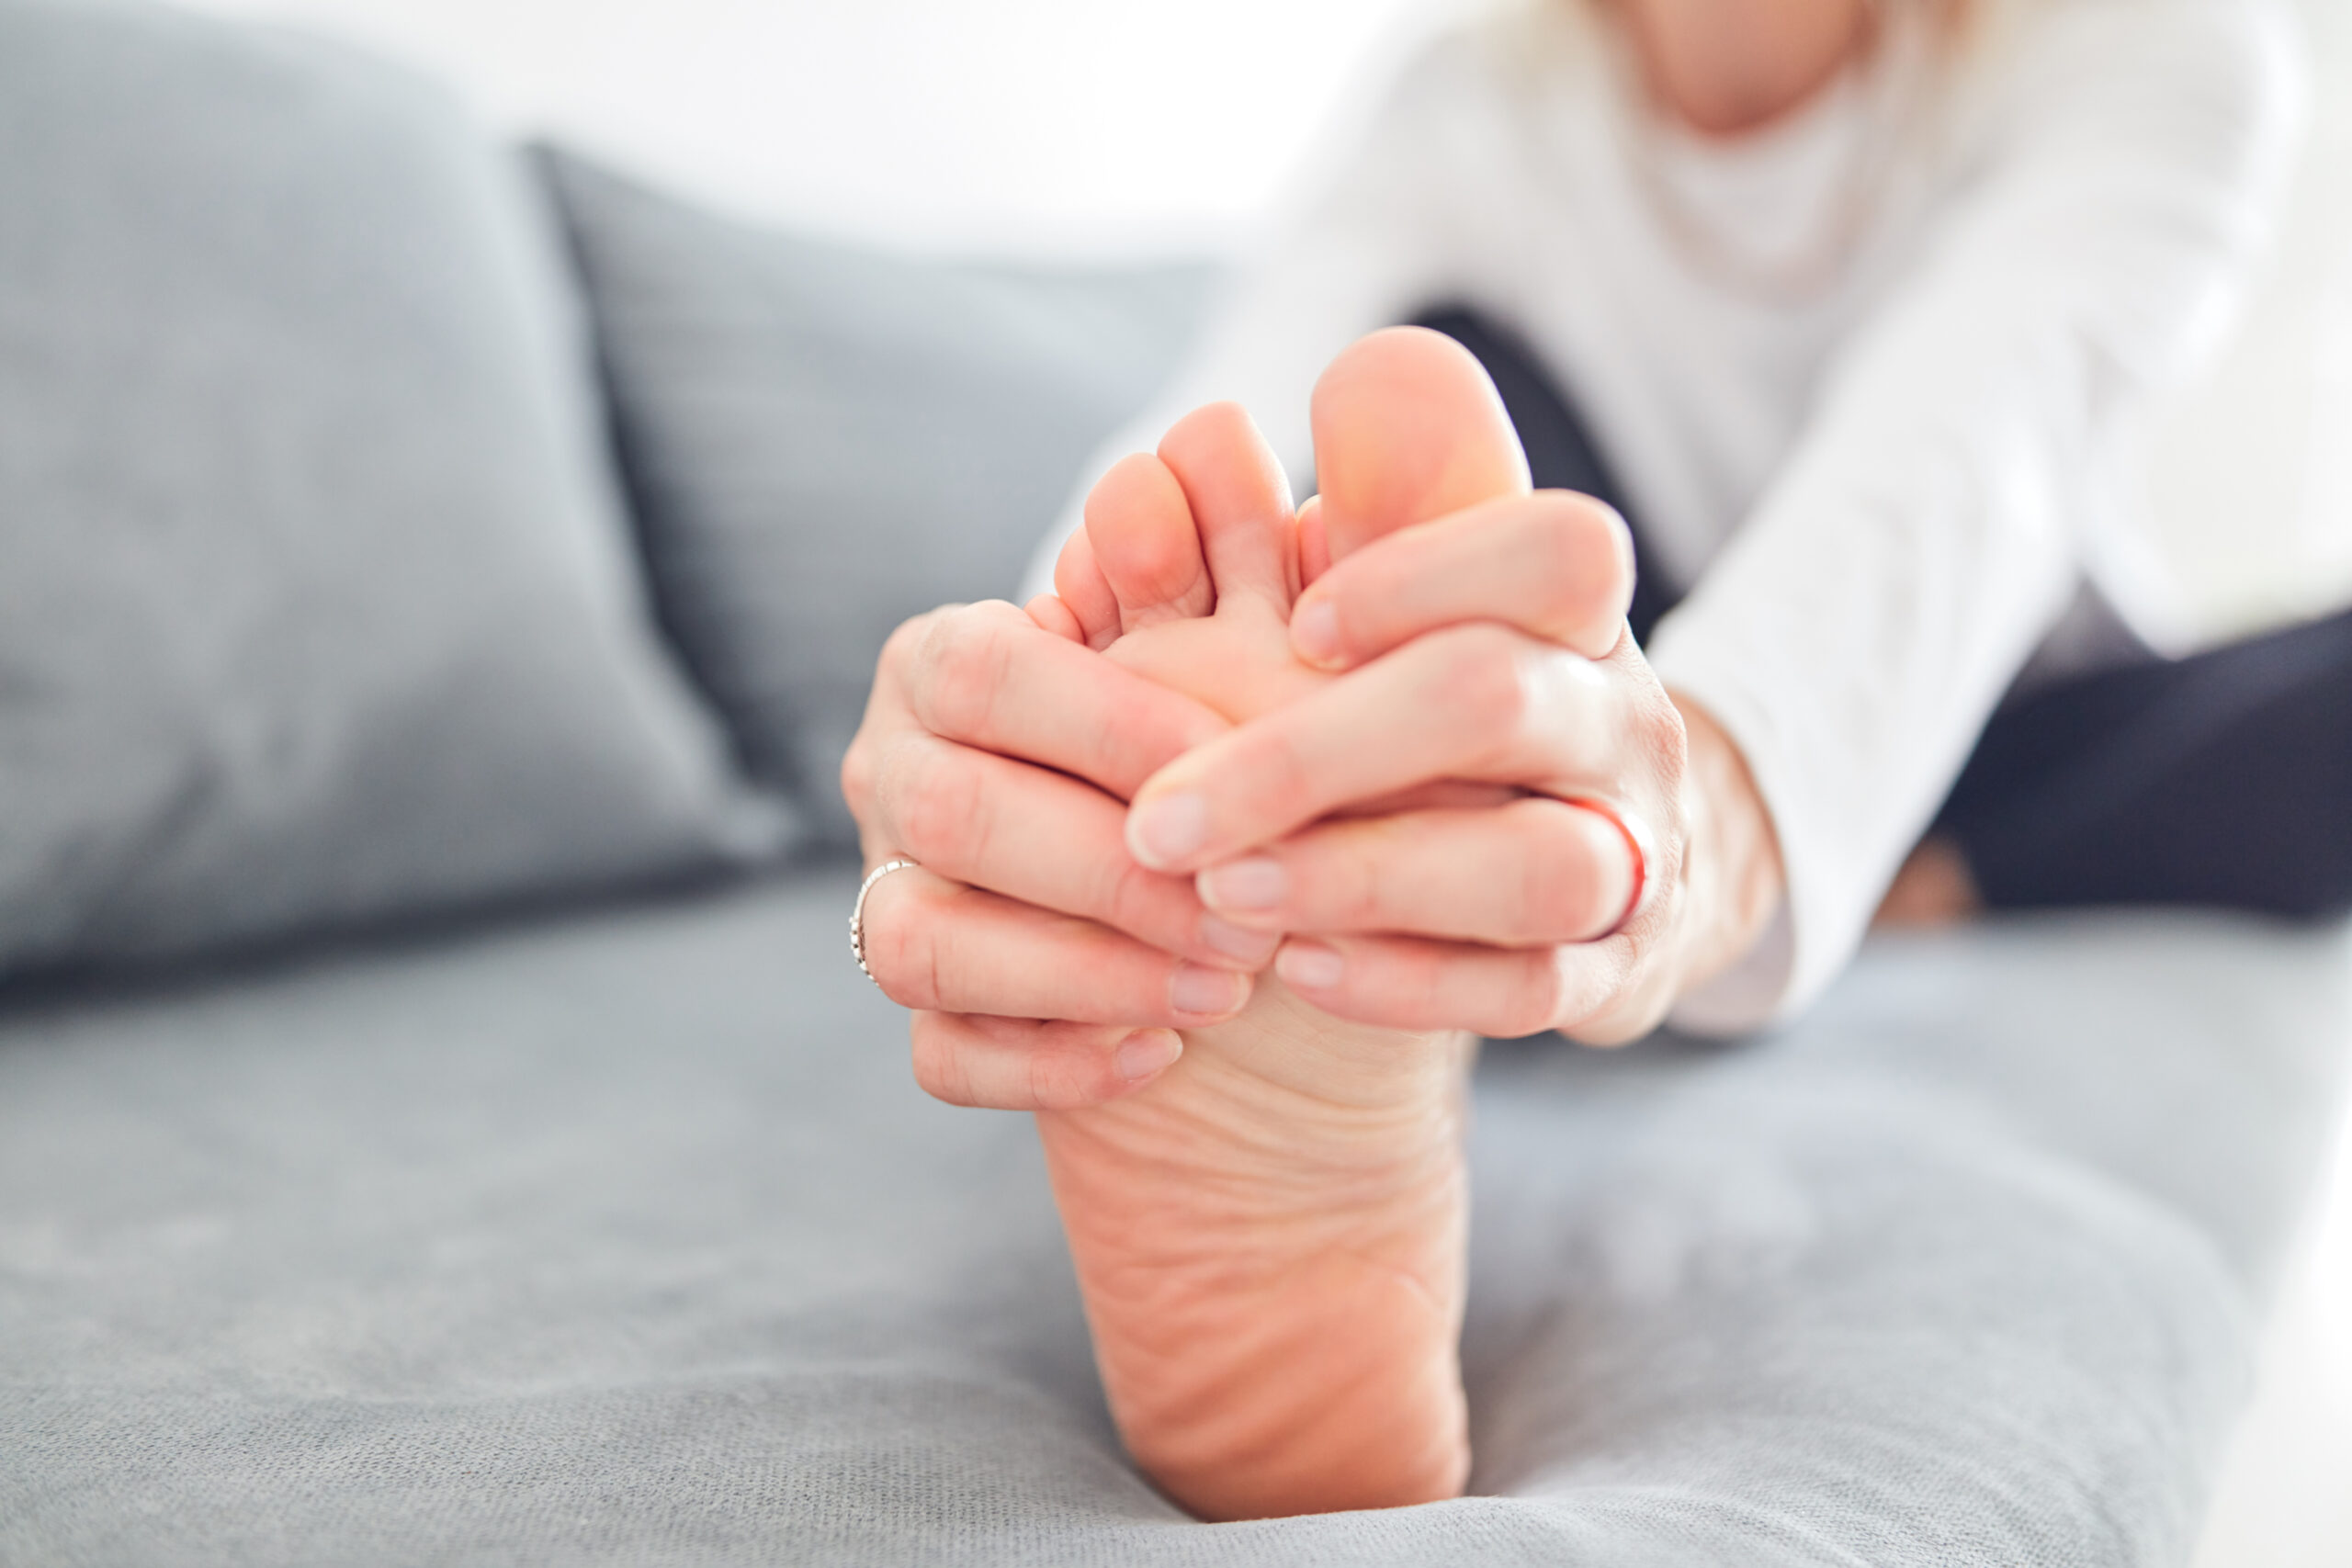 足のつけ根の痛み
足の悩みは何ですか？
種子骨炎
中足骨骨頭痛
NWPL社のファンクショナルオーソティックス®およびファンクショナルインソール
理学療法士の無料悩み相談"足のお悩み相談会" 指のつけ根の痛み